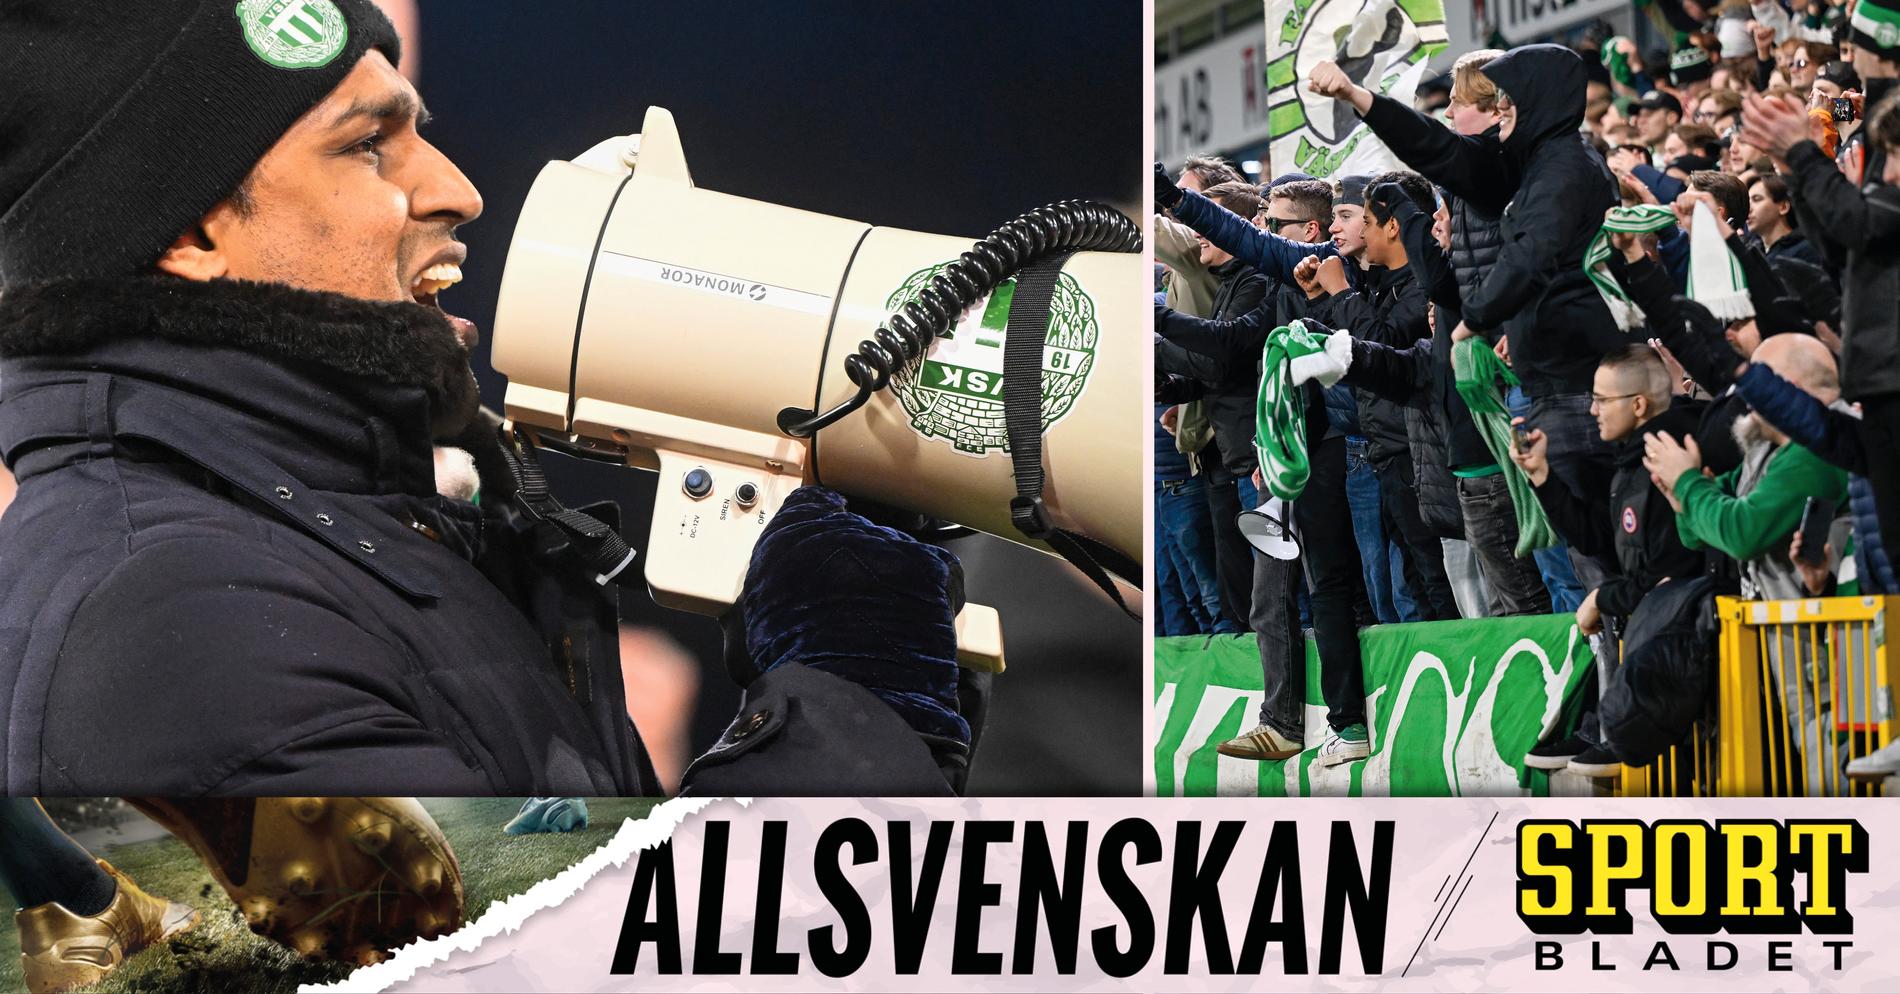 Allsvenskan: Kalle Karlssons efterlängtade jubel: ”Fick gnugga sig i ögonen” • Podden Sportbladet Allsvenskan med nytt avsnitt